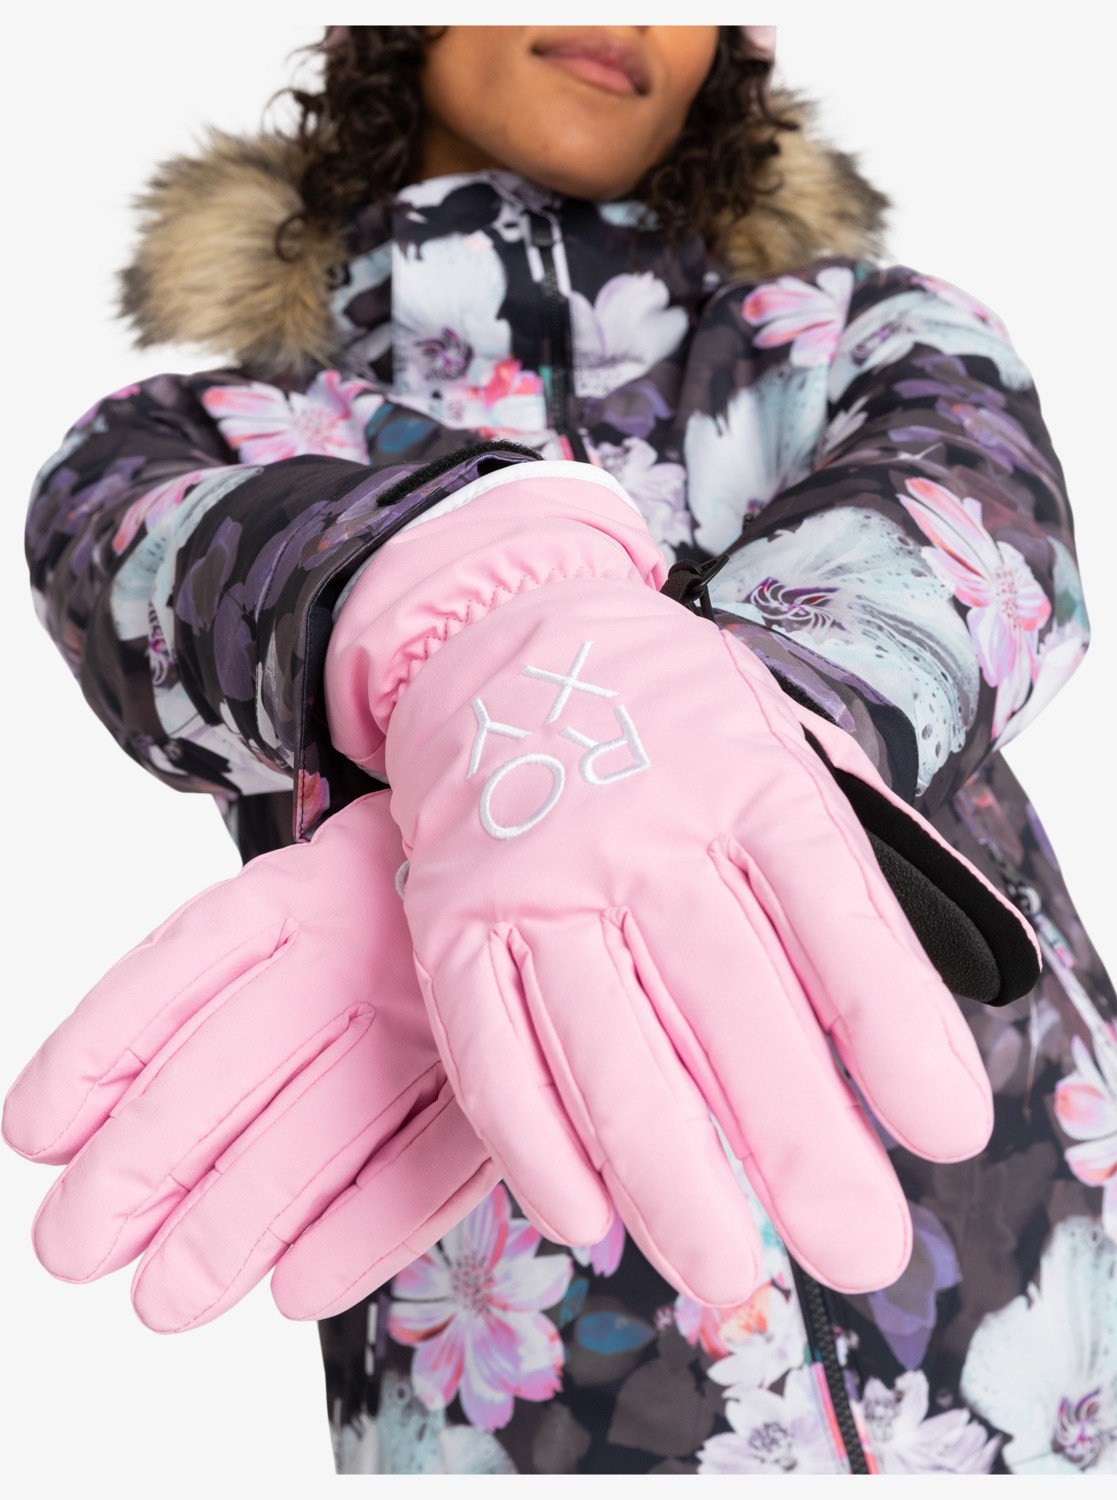  Roxy Kadın Freshfıeld Gloves Pınk Frostıng Eldiven Erjhn03239-mgs0